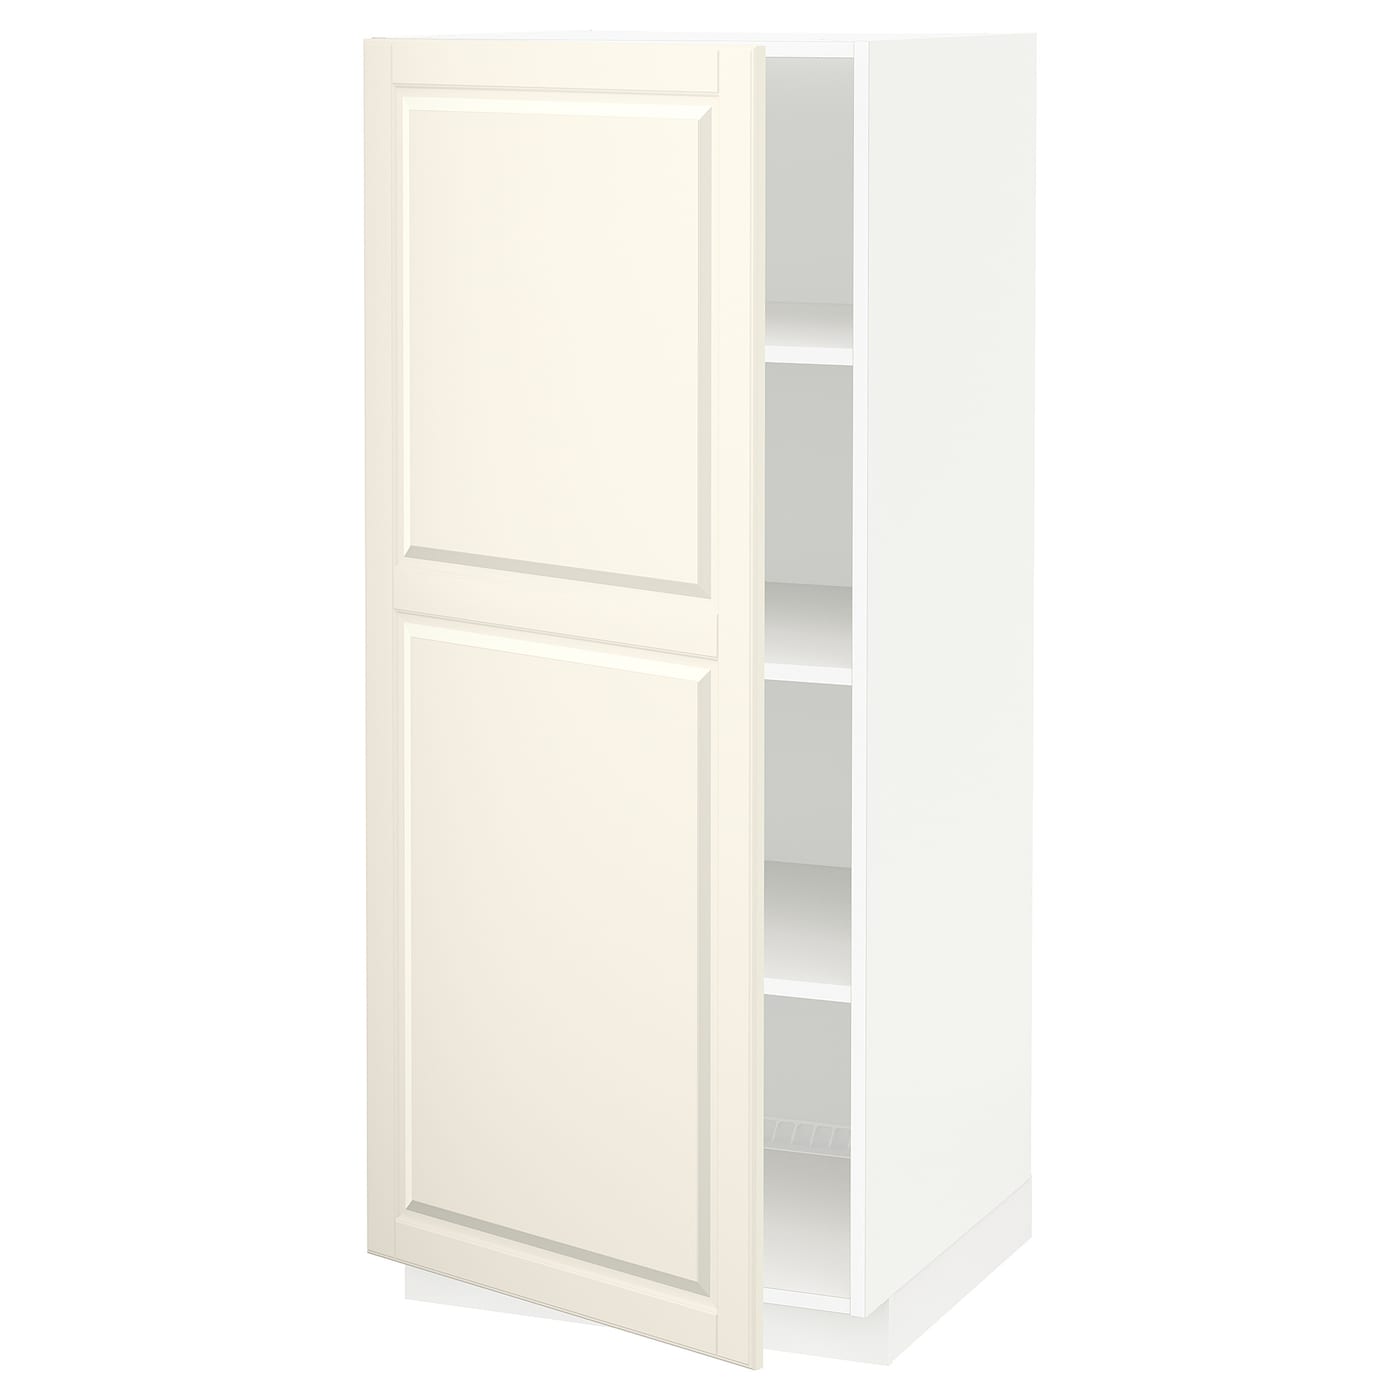 Высокий кухонный шкаф с полками - IKEA METOD/МЕТОД ИКЕА, 140х60х60 см, белый/кремовый